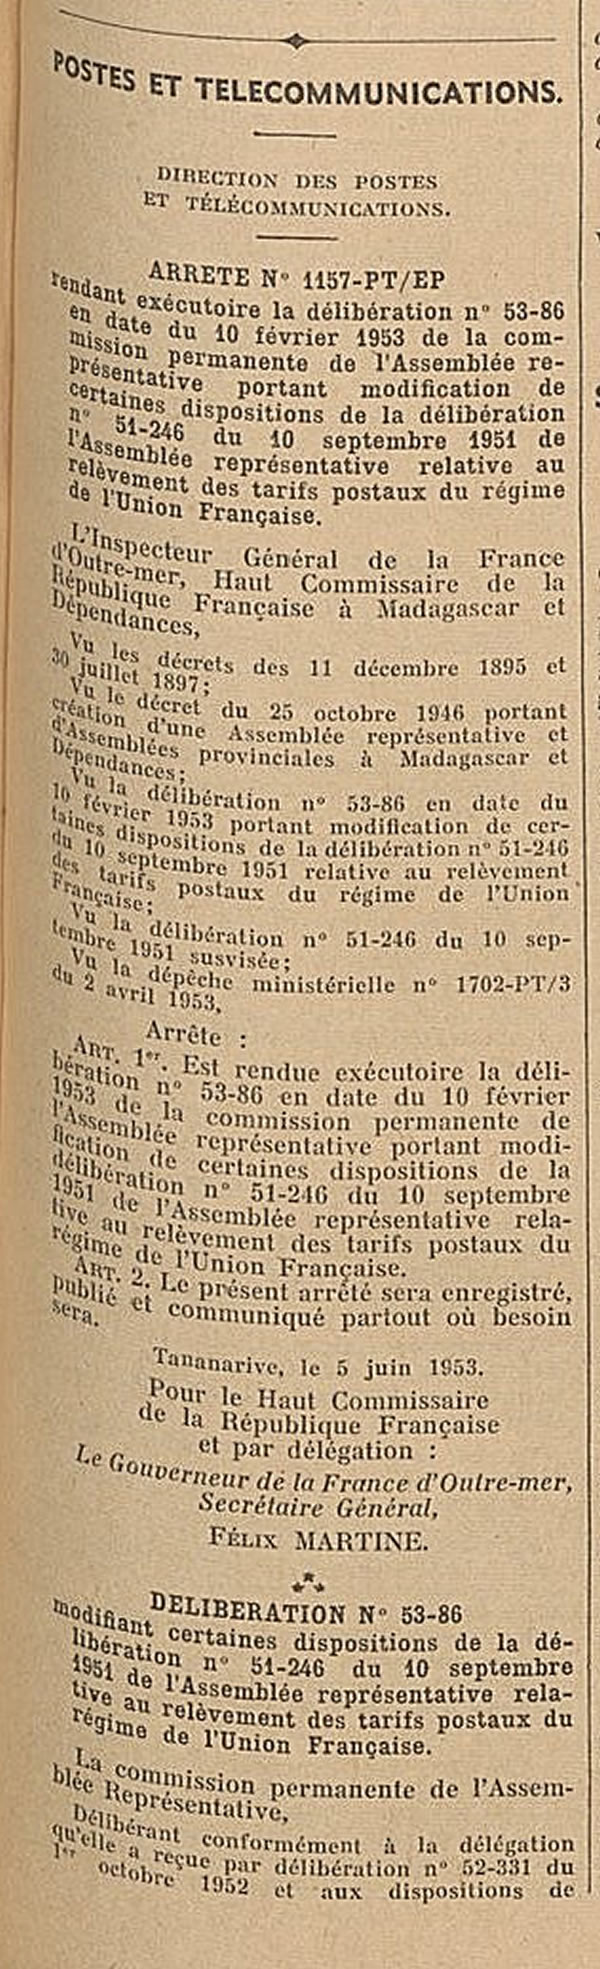 Tarif Union Française juin 1953